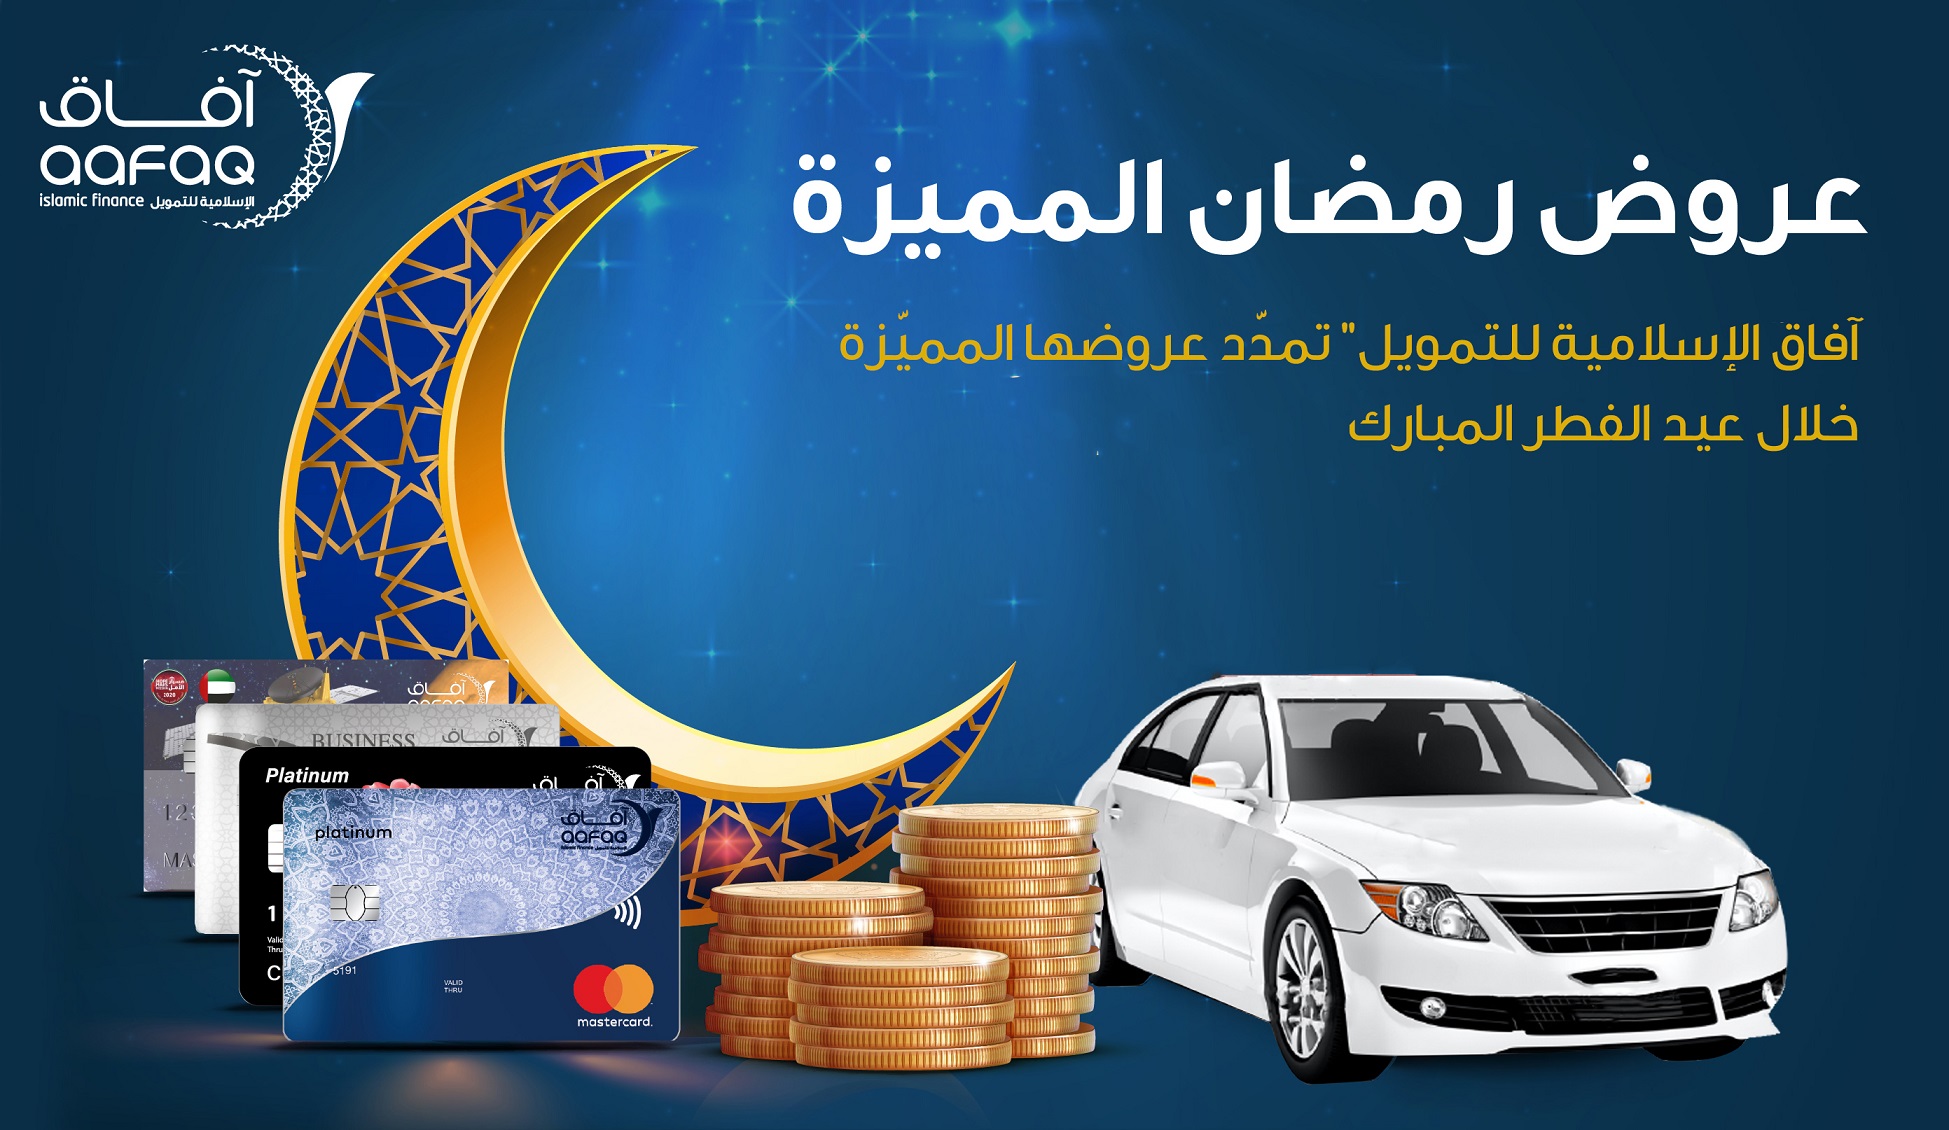 Aafaq Islamic Finance extends its special Ramadan offers during Eid Al-Fitr